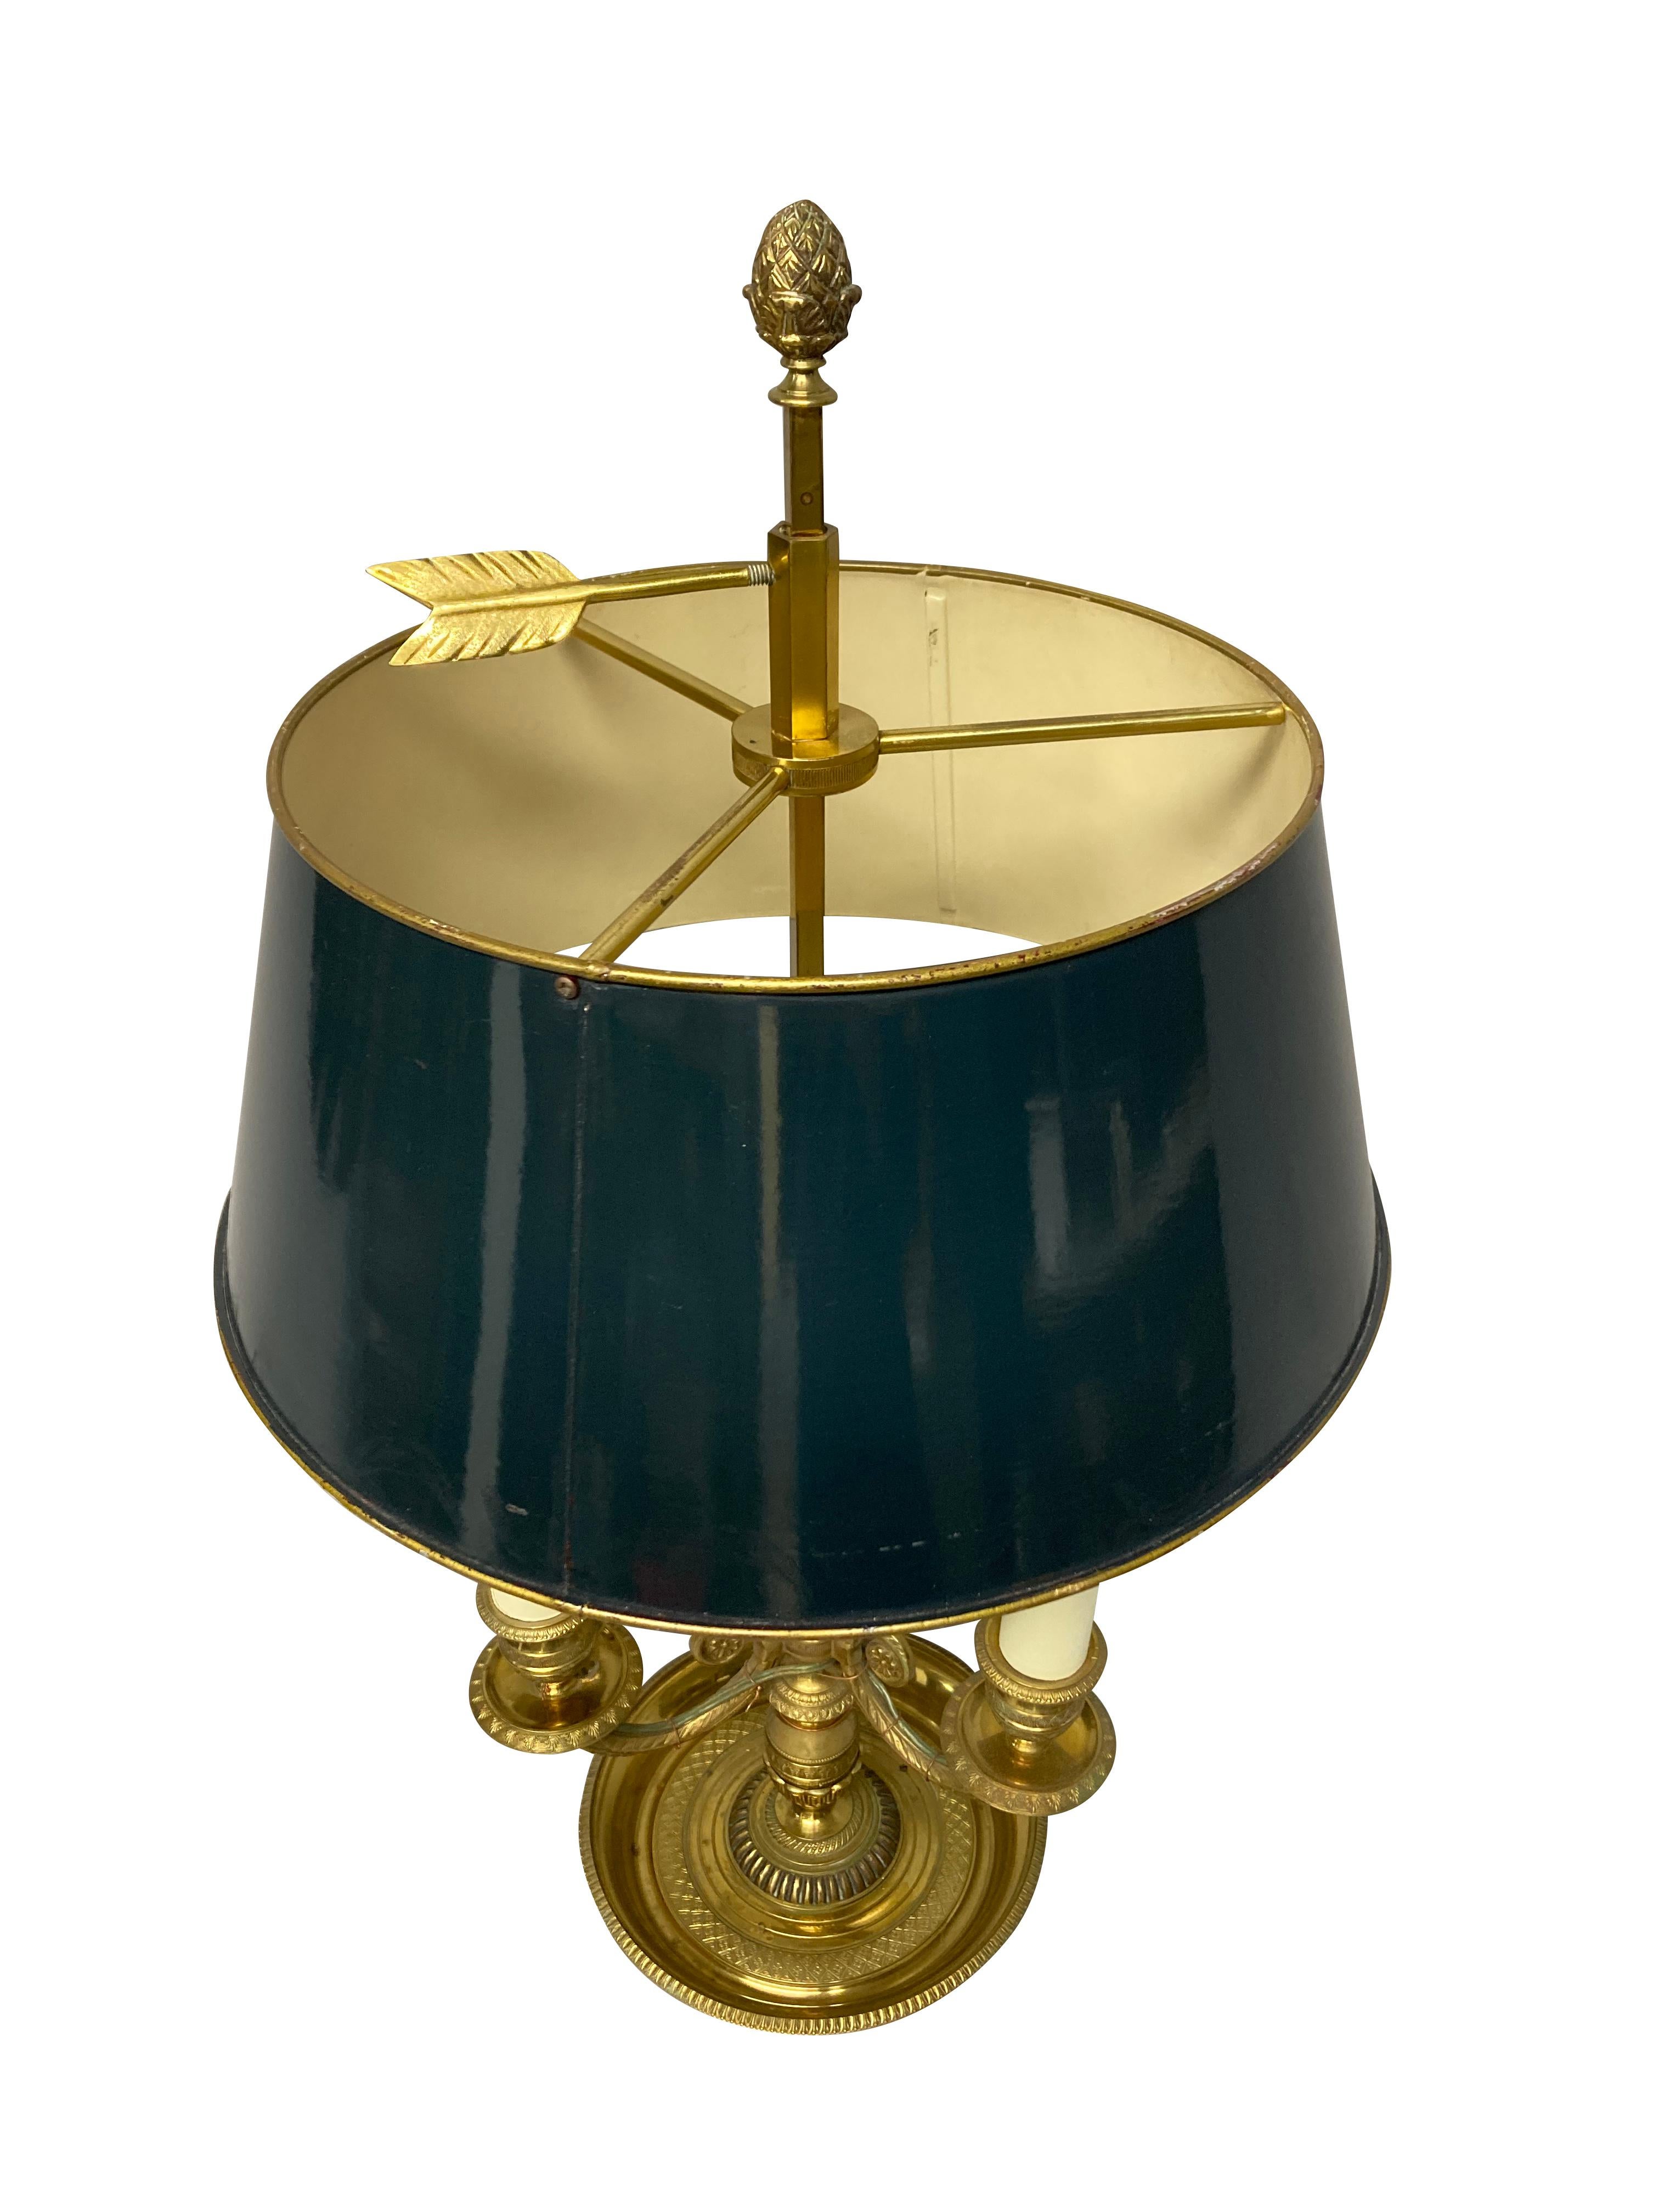 Französische Bouillotte-Lampe aus vergoldetem Messing mit drei Zweigen und einem verstellbaren, blau bemalten Tüll-Schirm. Die Details und die Metallarbeit sind sehr fein, mit Akanthus, griechischen Schlüssel und Eichel Dekoration. Ursprünglich für